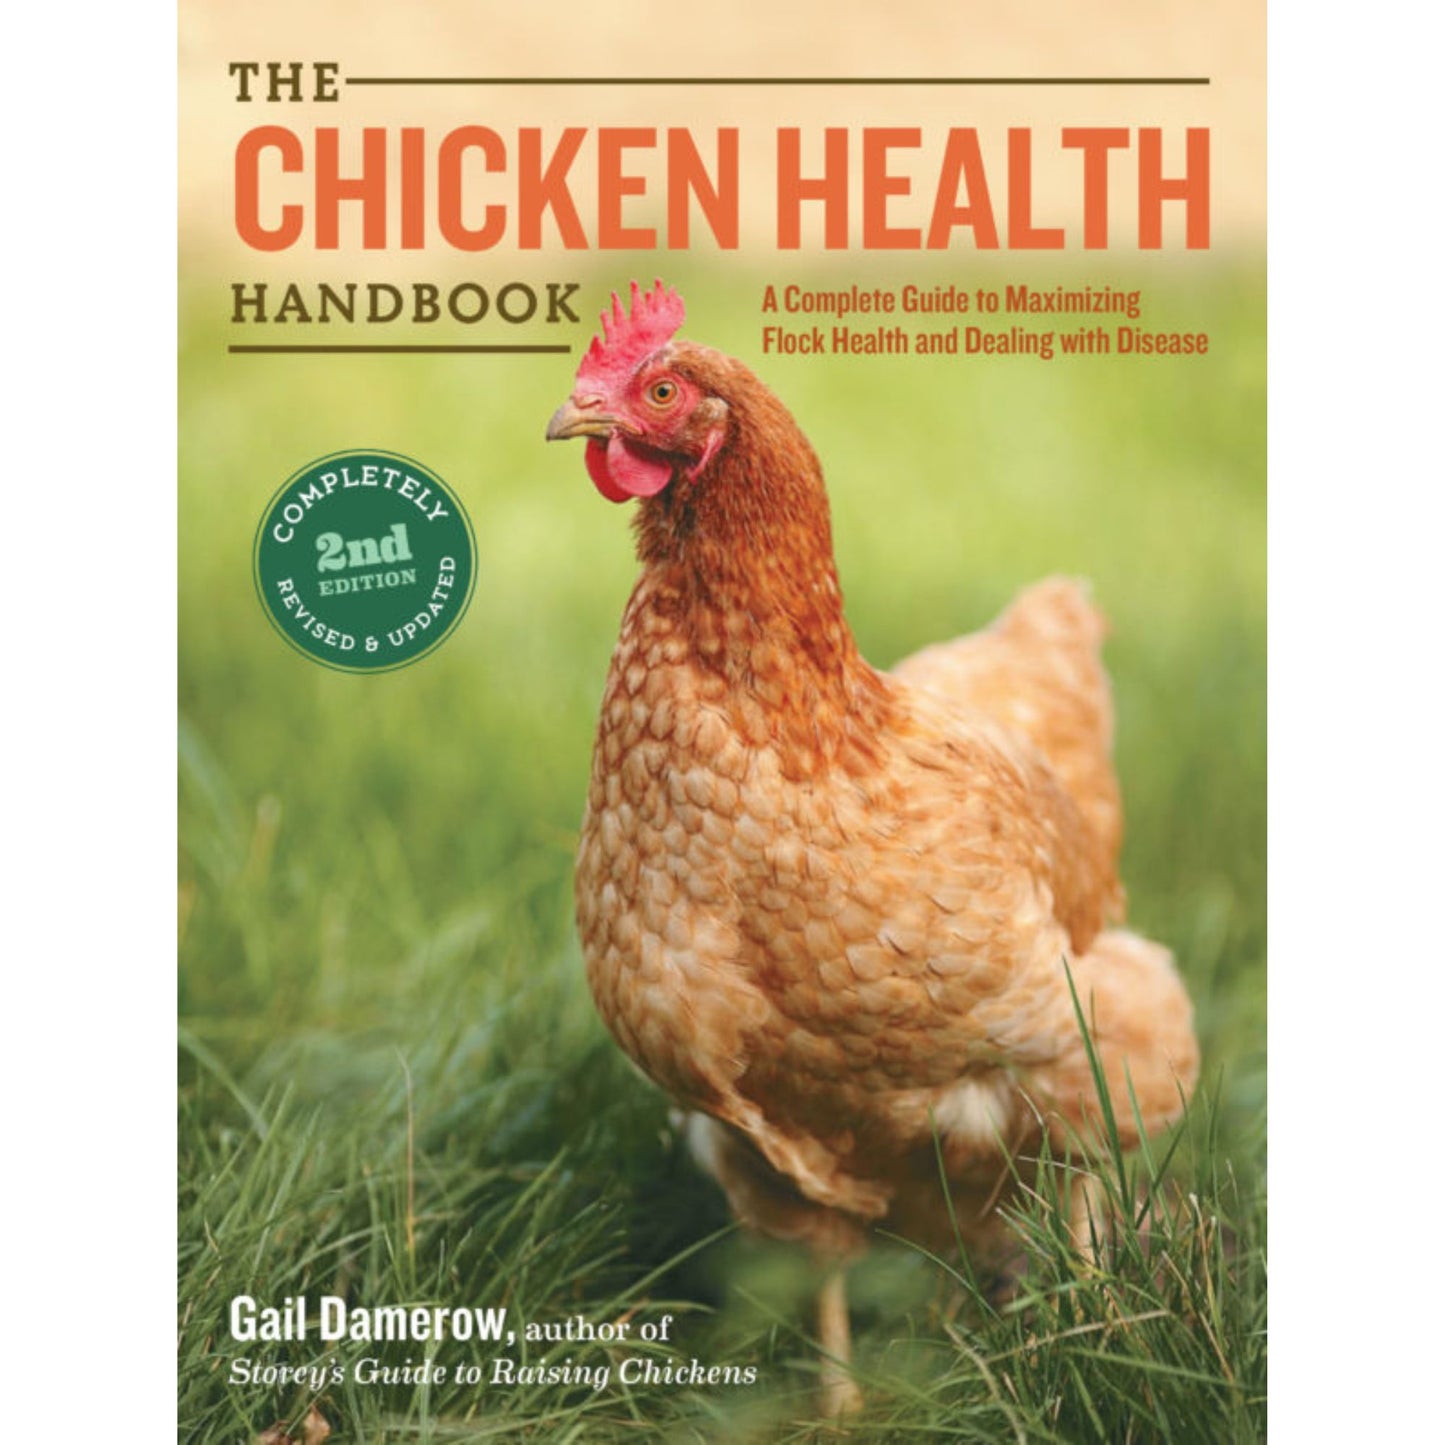 The Chicken Health Handbook, 2nd edition